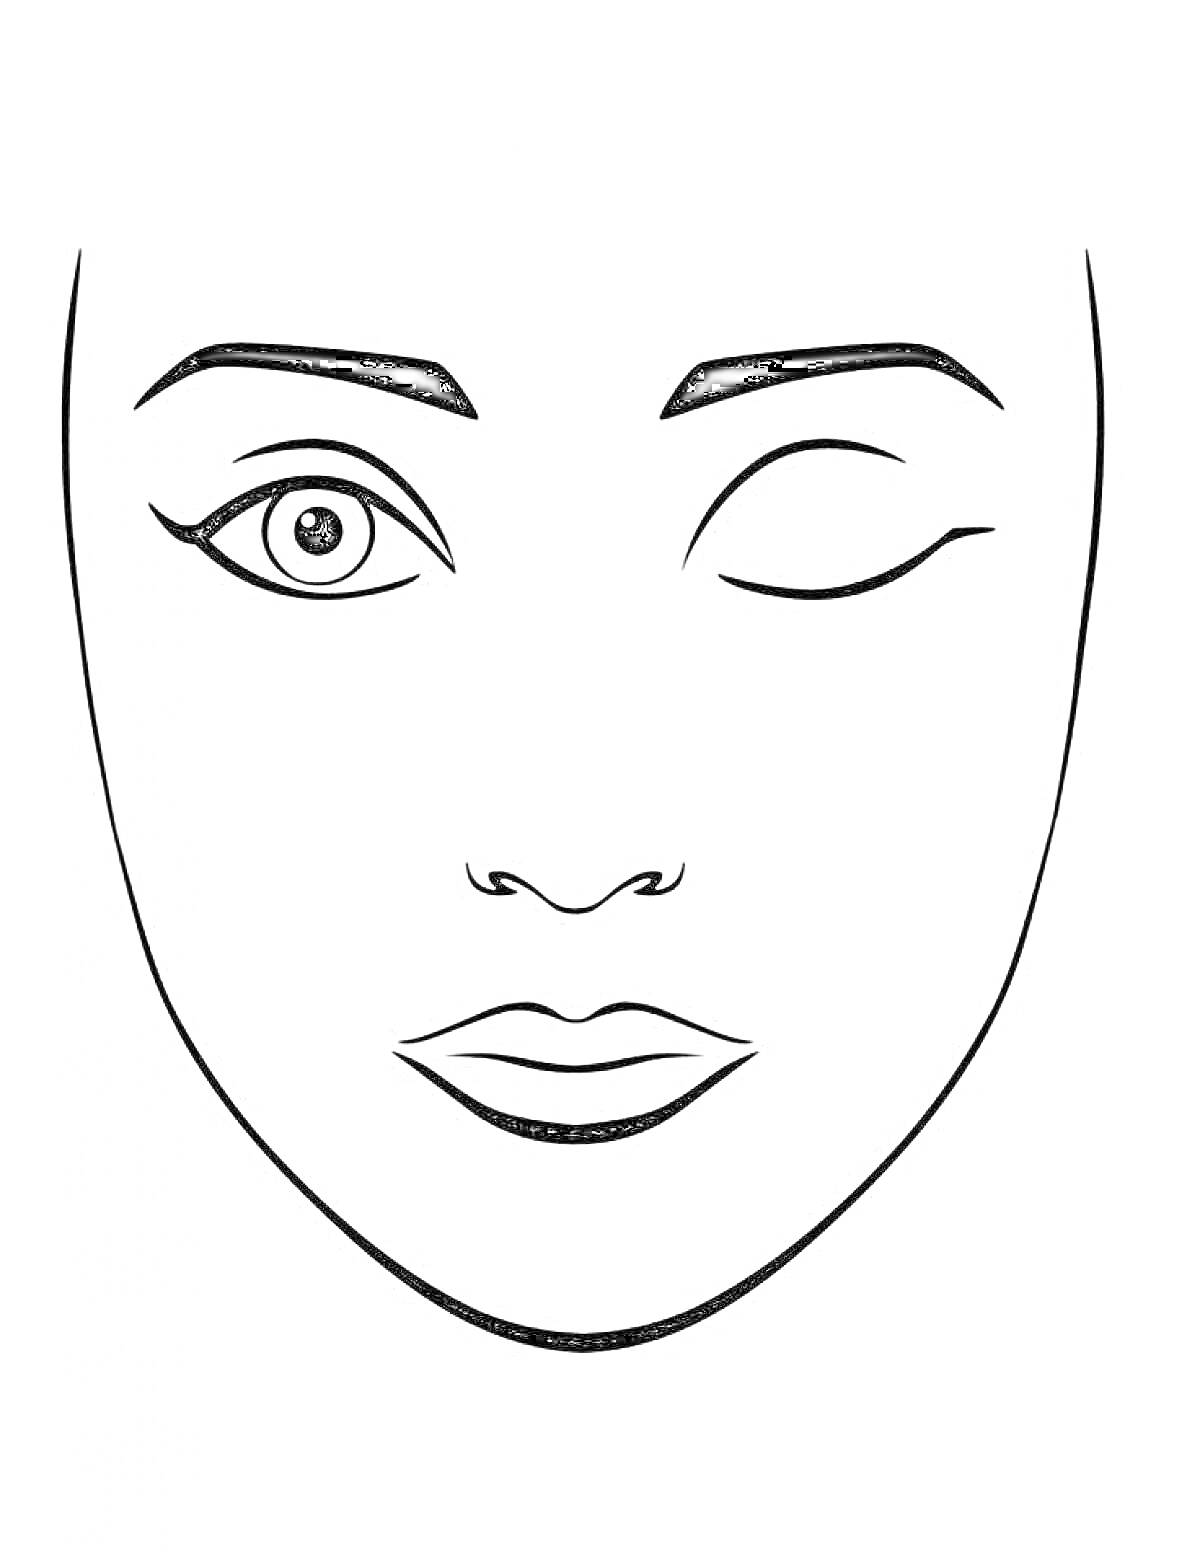 Раскраска Лицо с одним открытым глазом, прищуренным вторым глазом, бровями, носом и губами